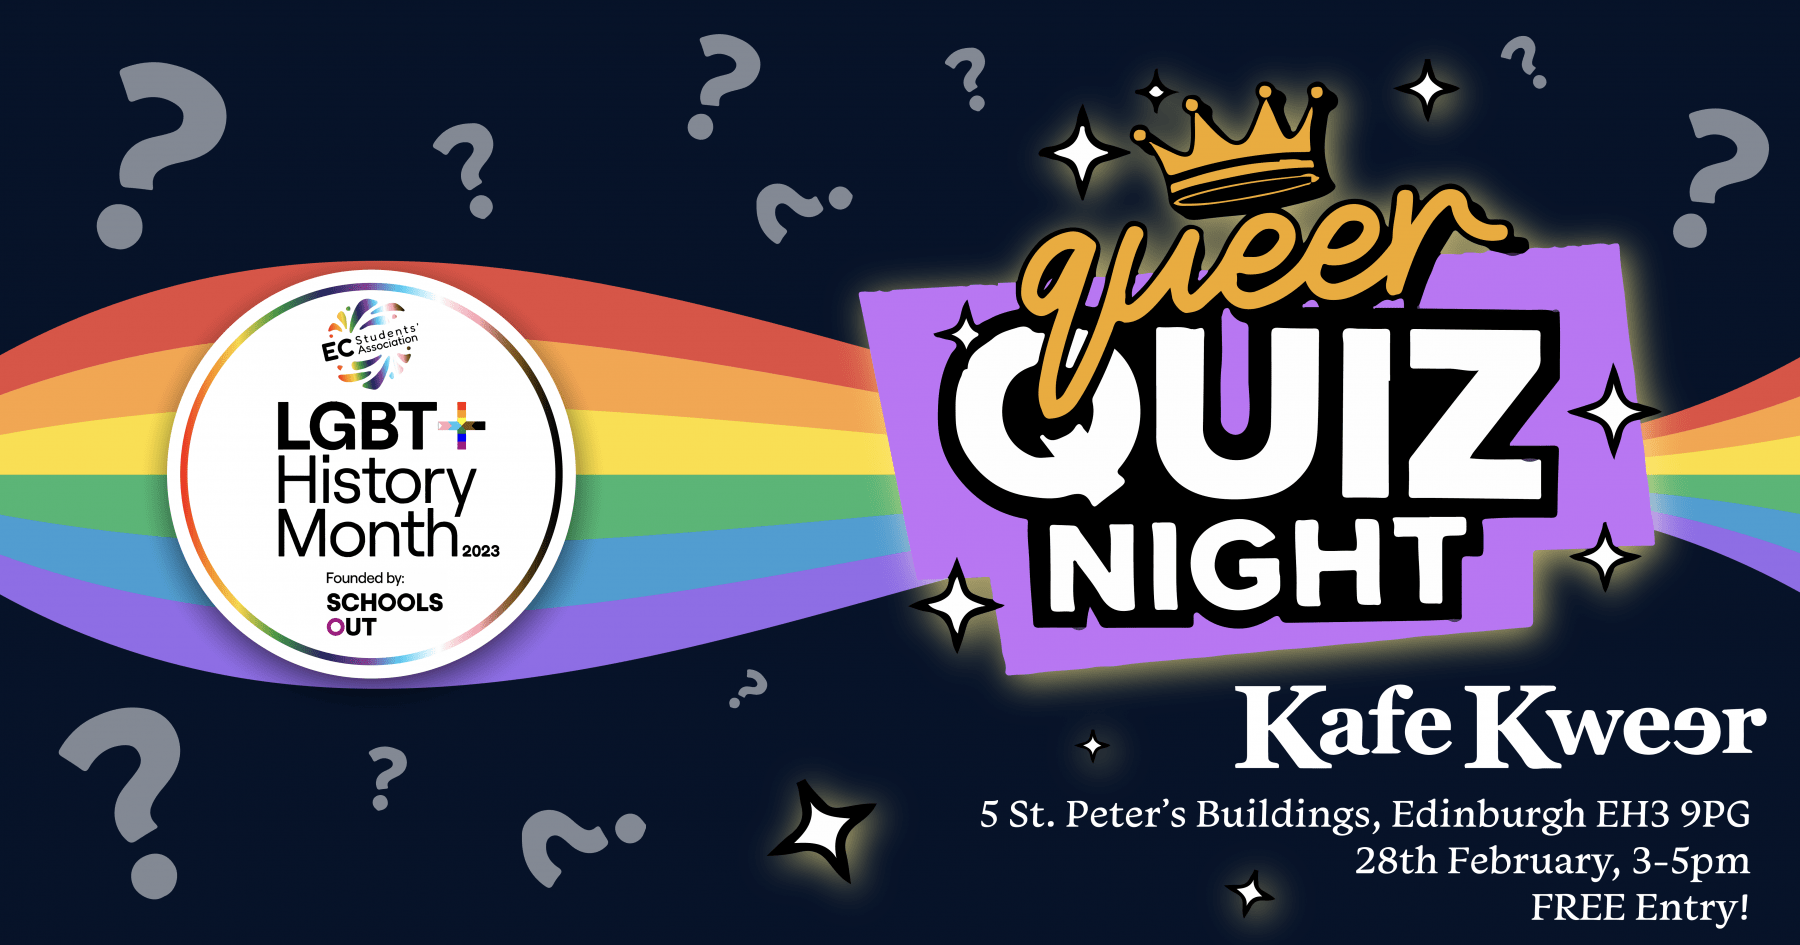 Queer Quiz Night